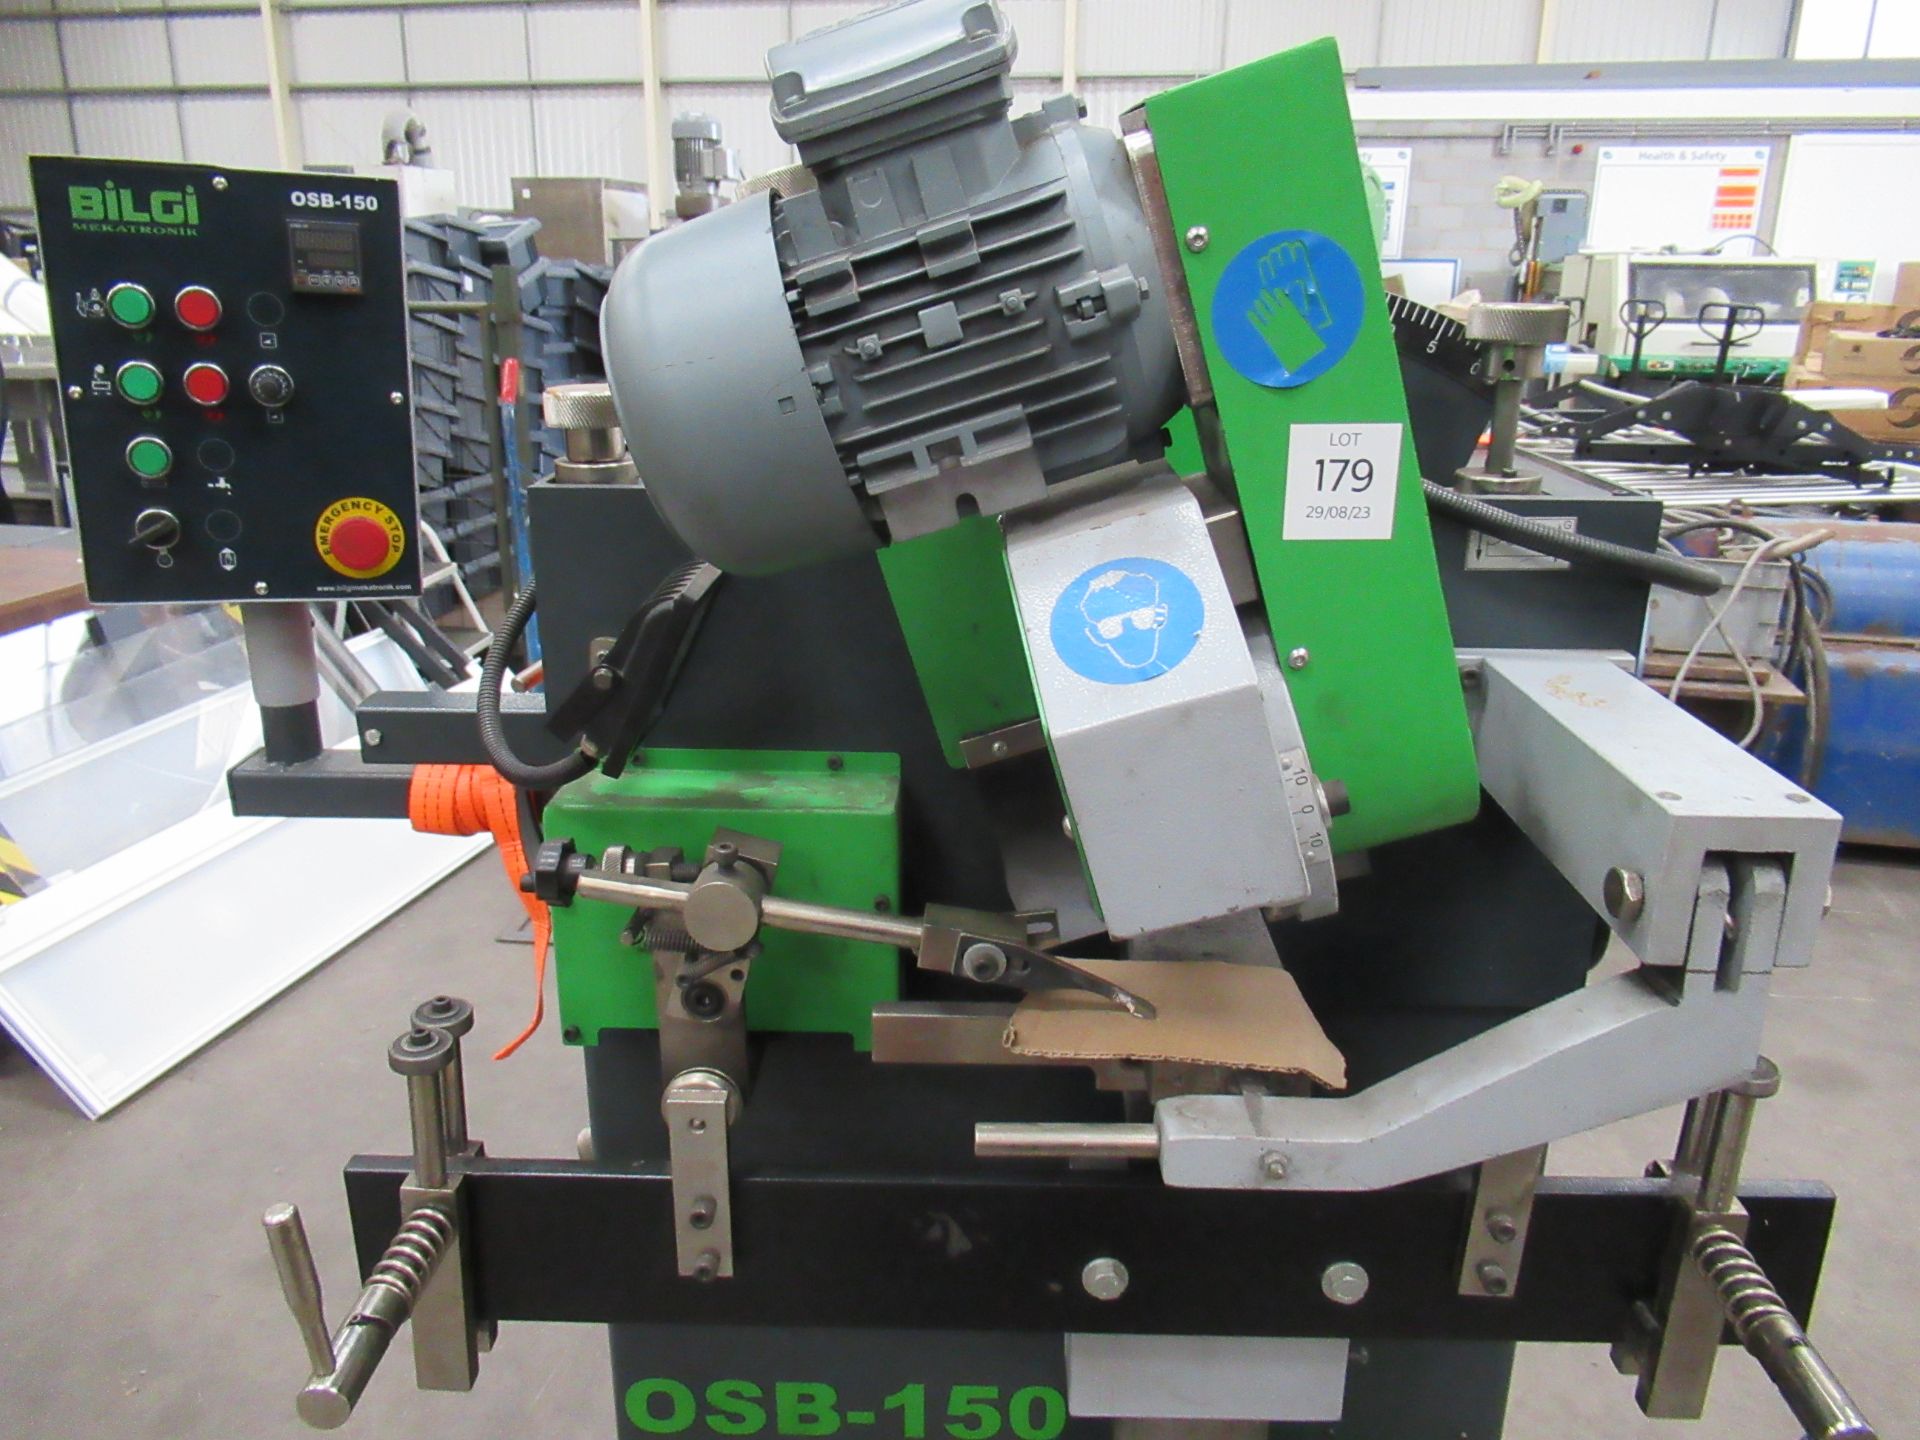 Bilgi OSB-150 Metalworking Grinding Machine - Image 2 of 6